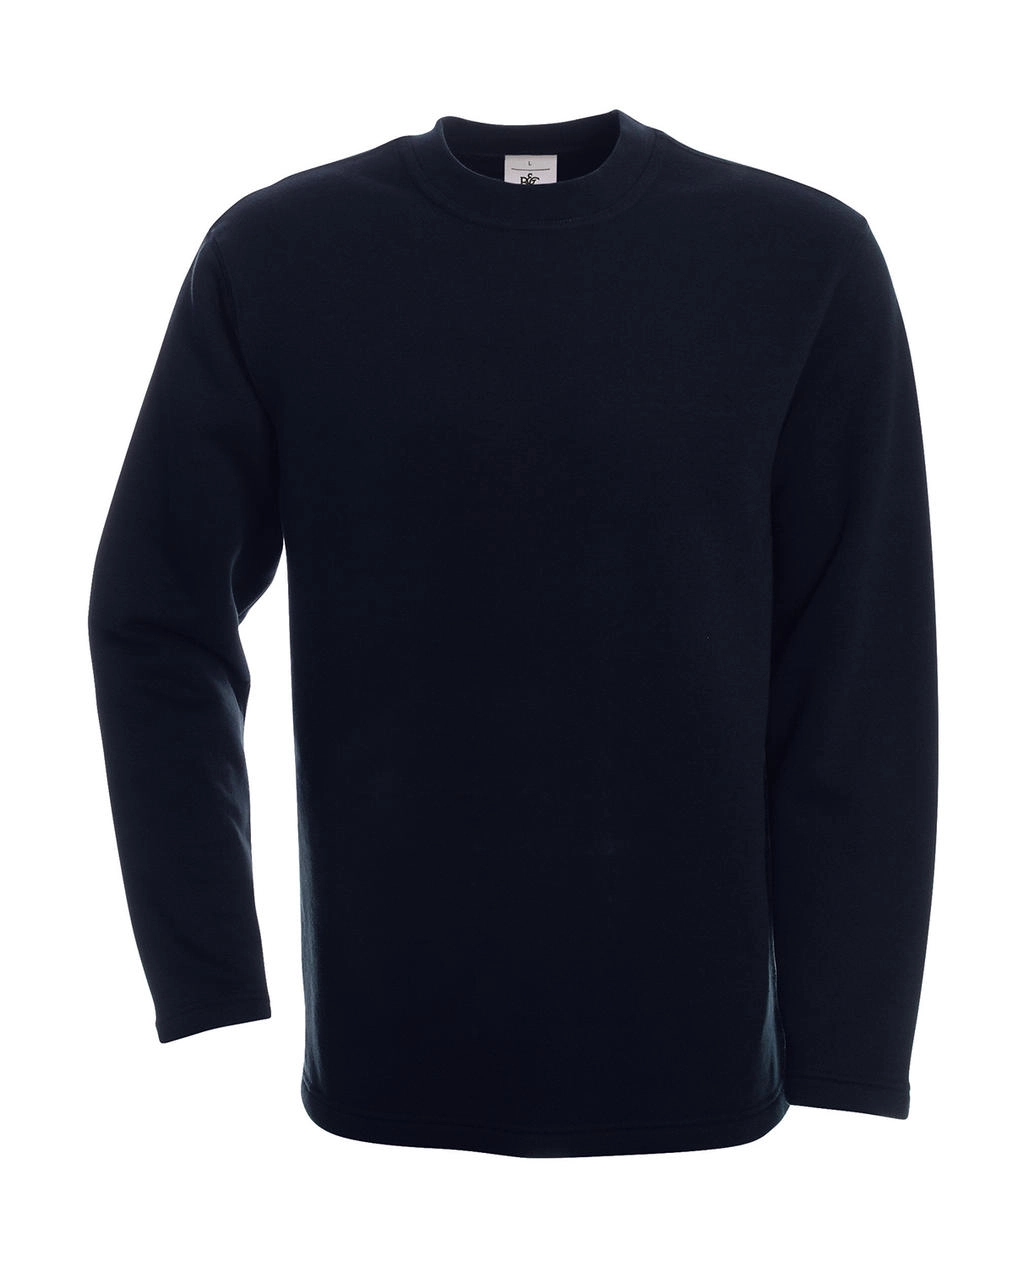 Open Hem Sweatshirt zum Besticken und Bedrucken in der Farbe Navy mit Ihren Logo, Schriftzug oder Motiv.